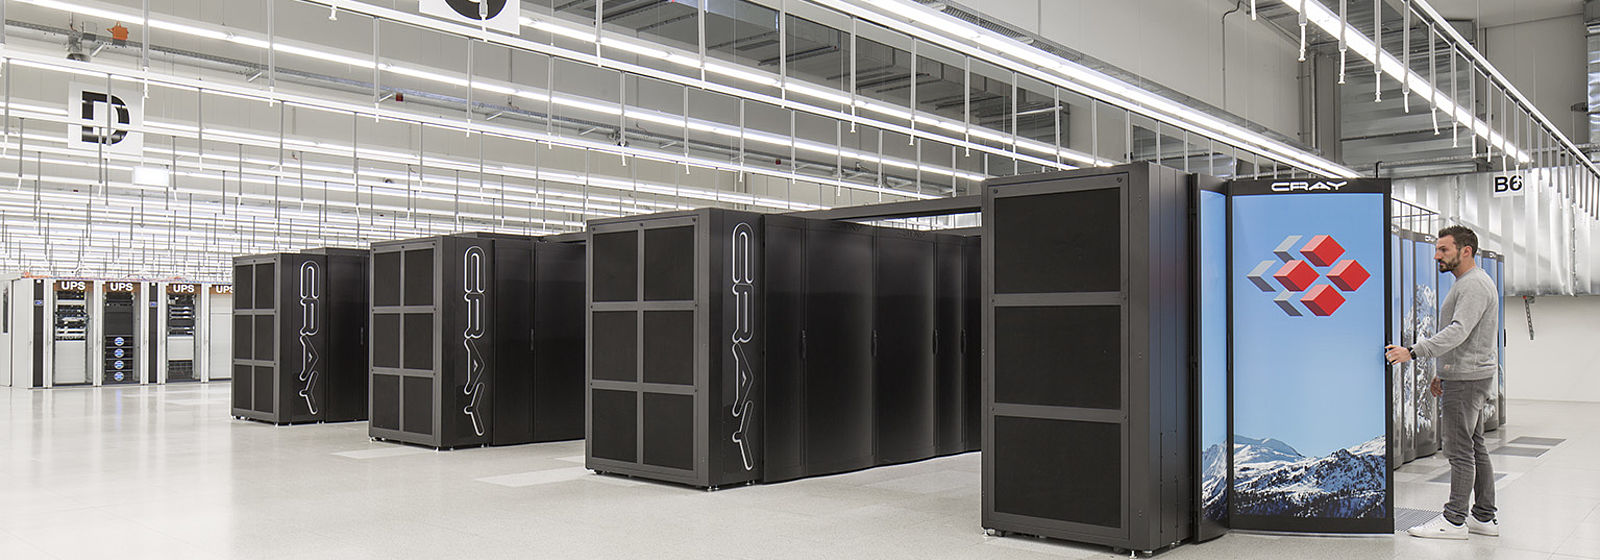 Hackerangriff trifft mehrere Schweizer Supercomputer